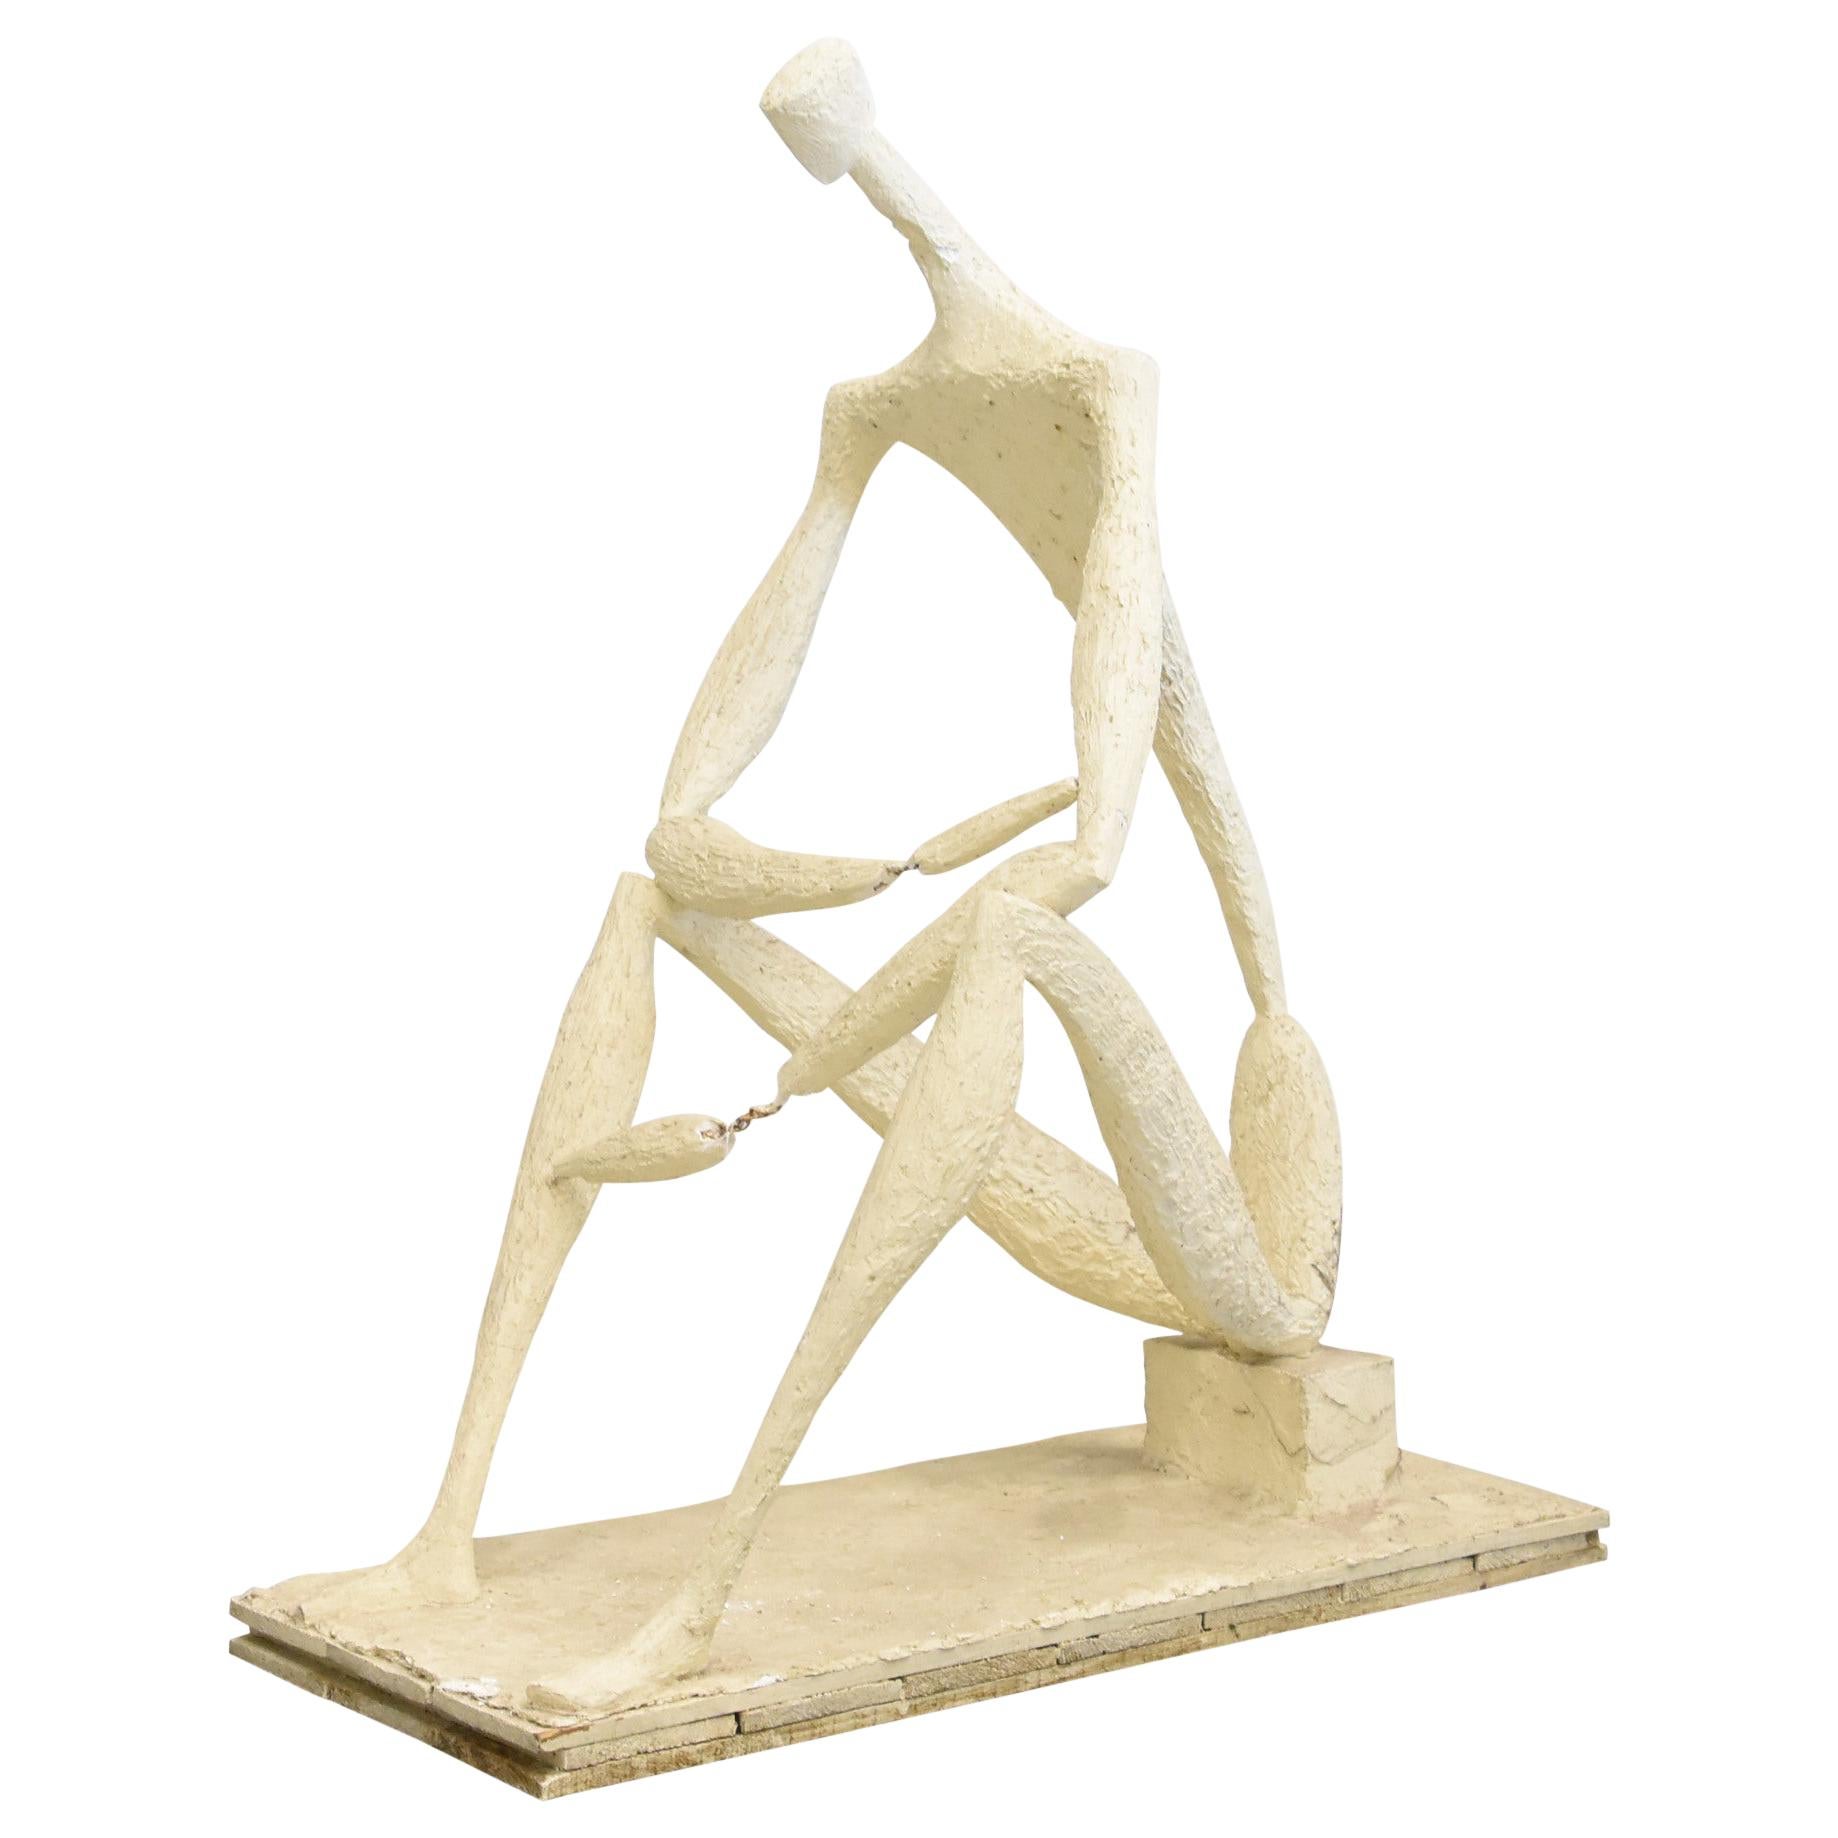 Stievenart Michel Plaster Sculpture "Seated Man" Dated 1960, by Michel Stievenar